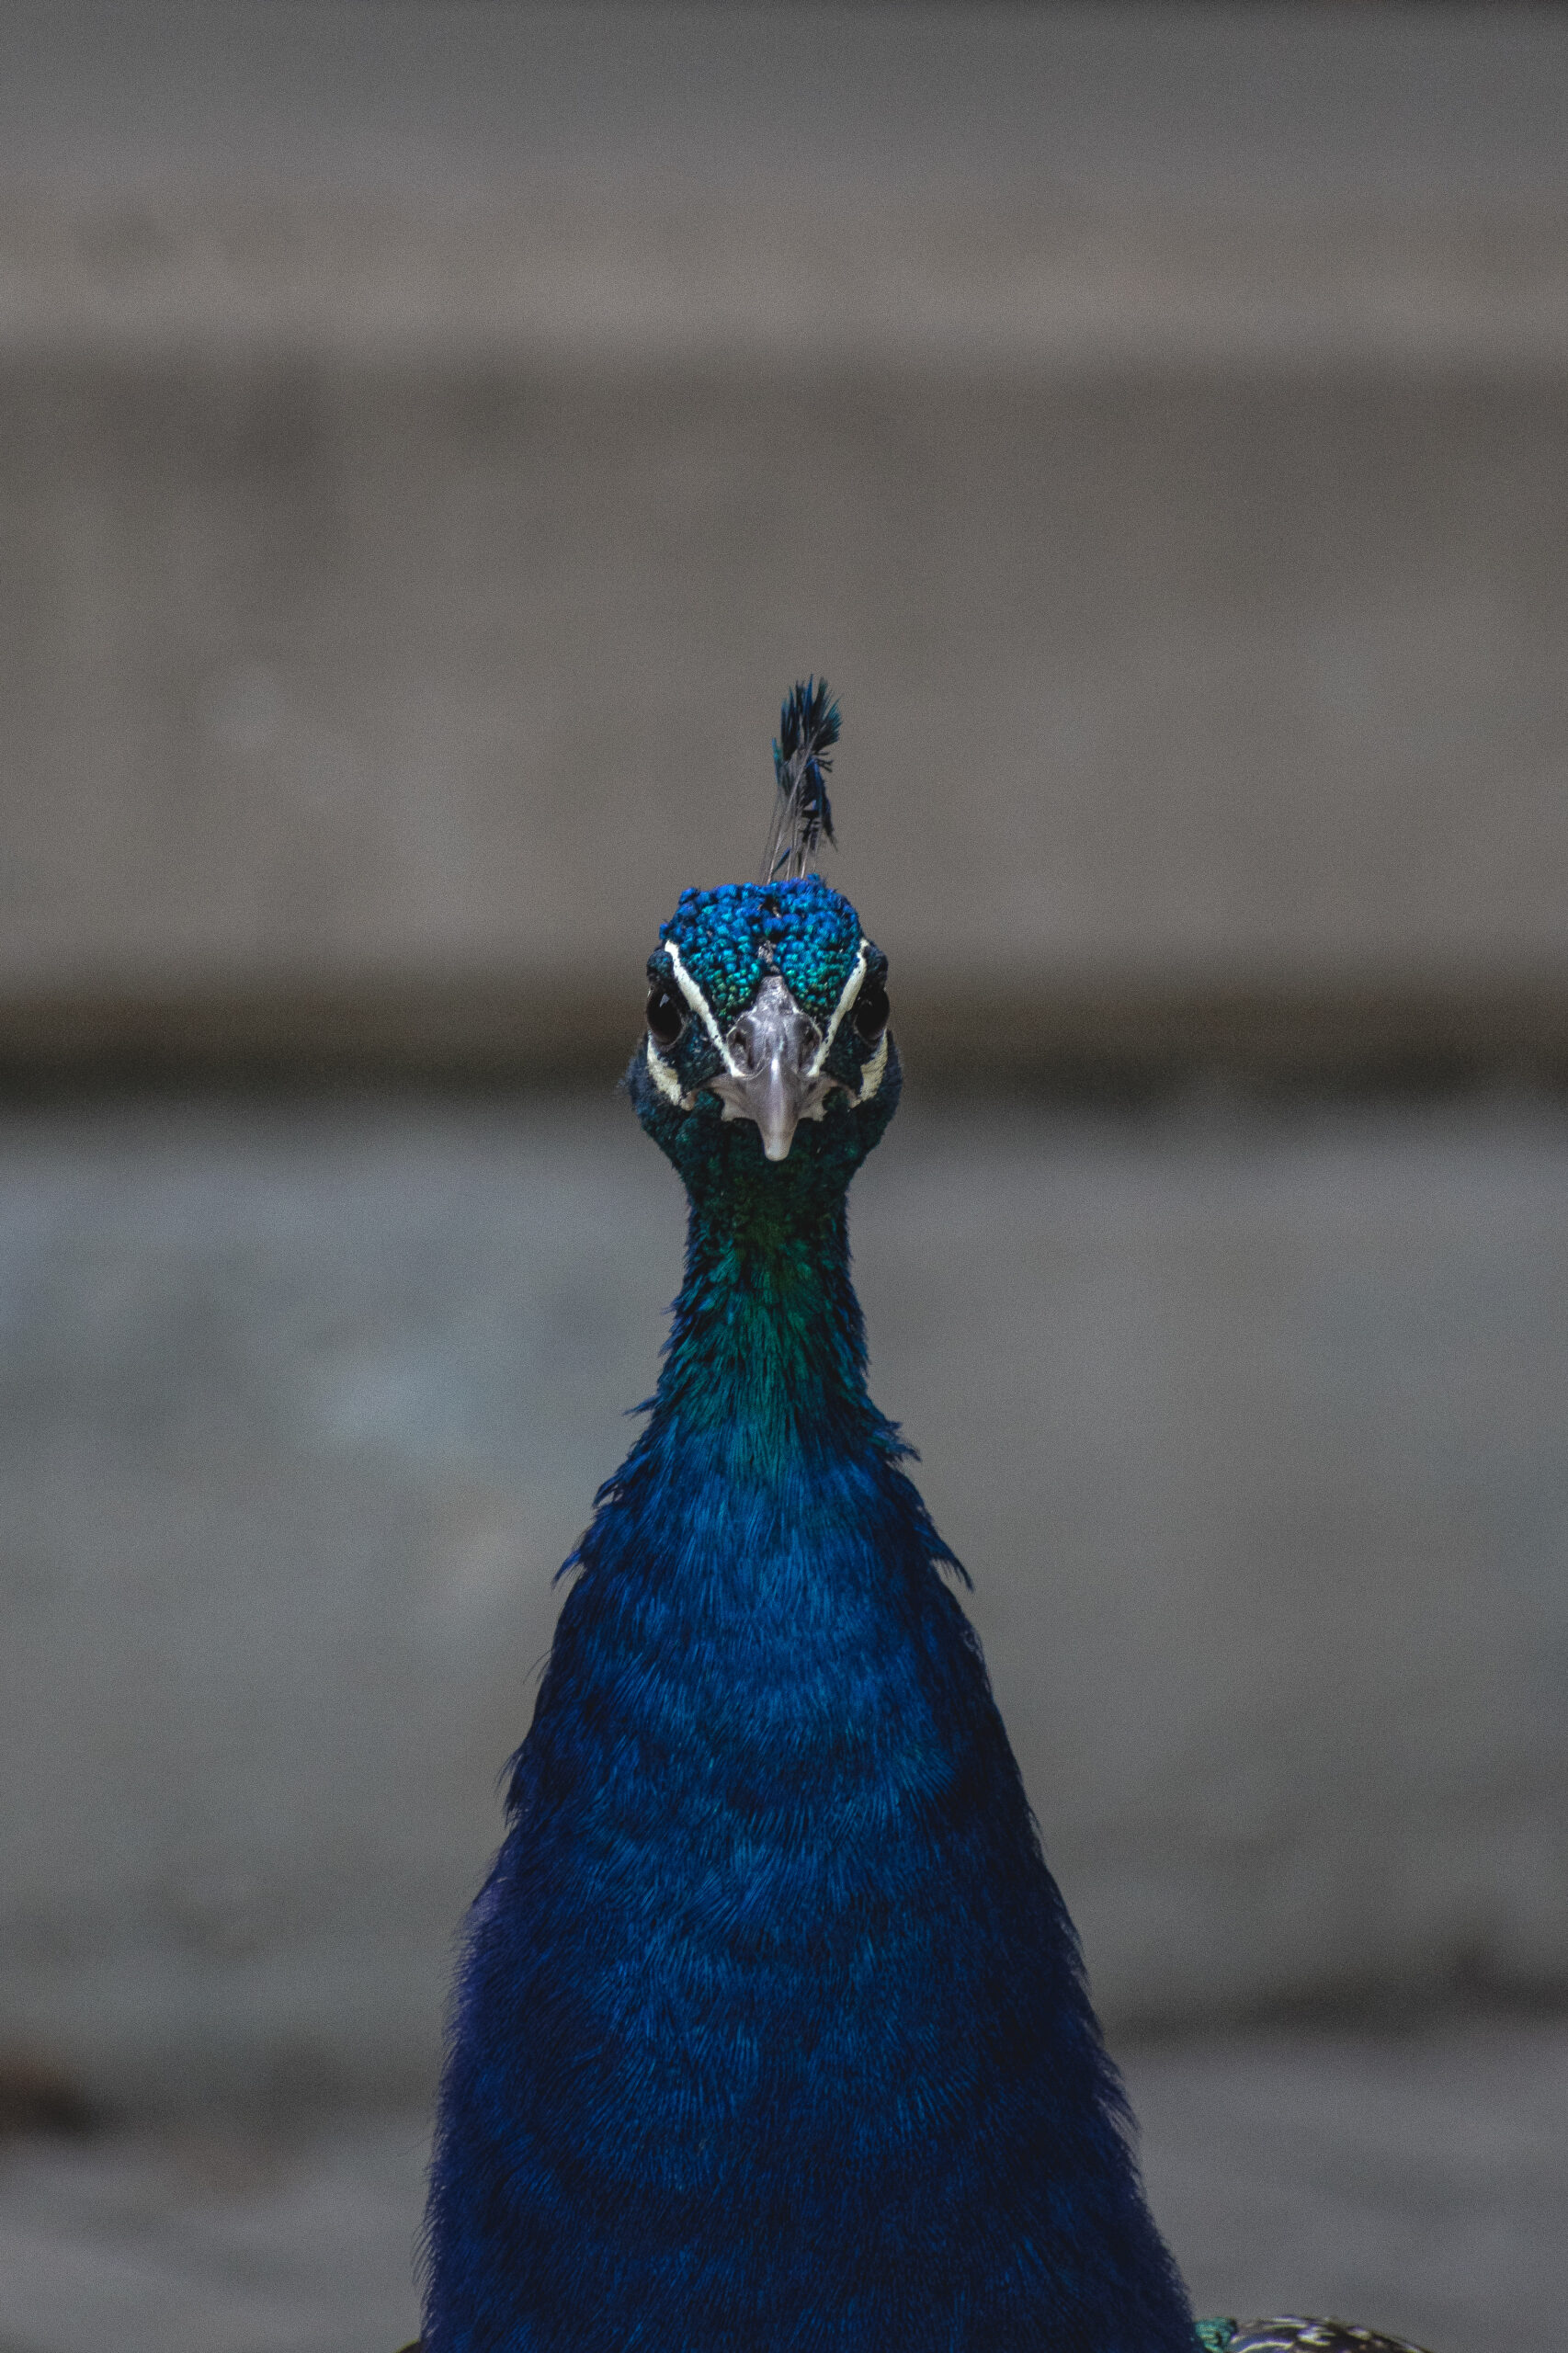 Peacock Stare